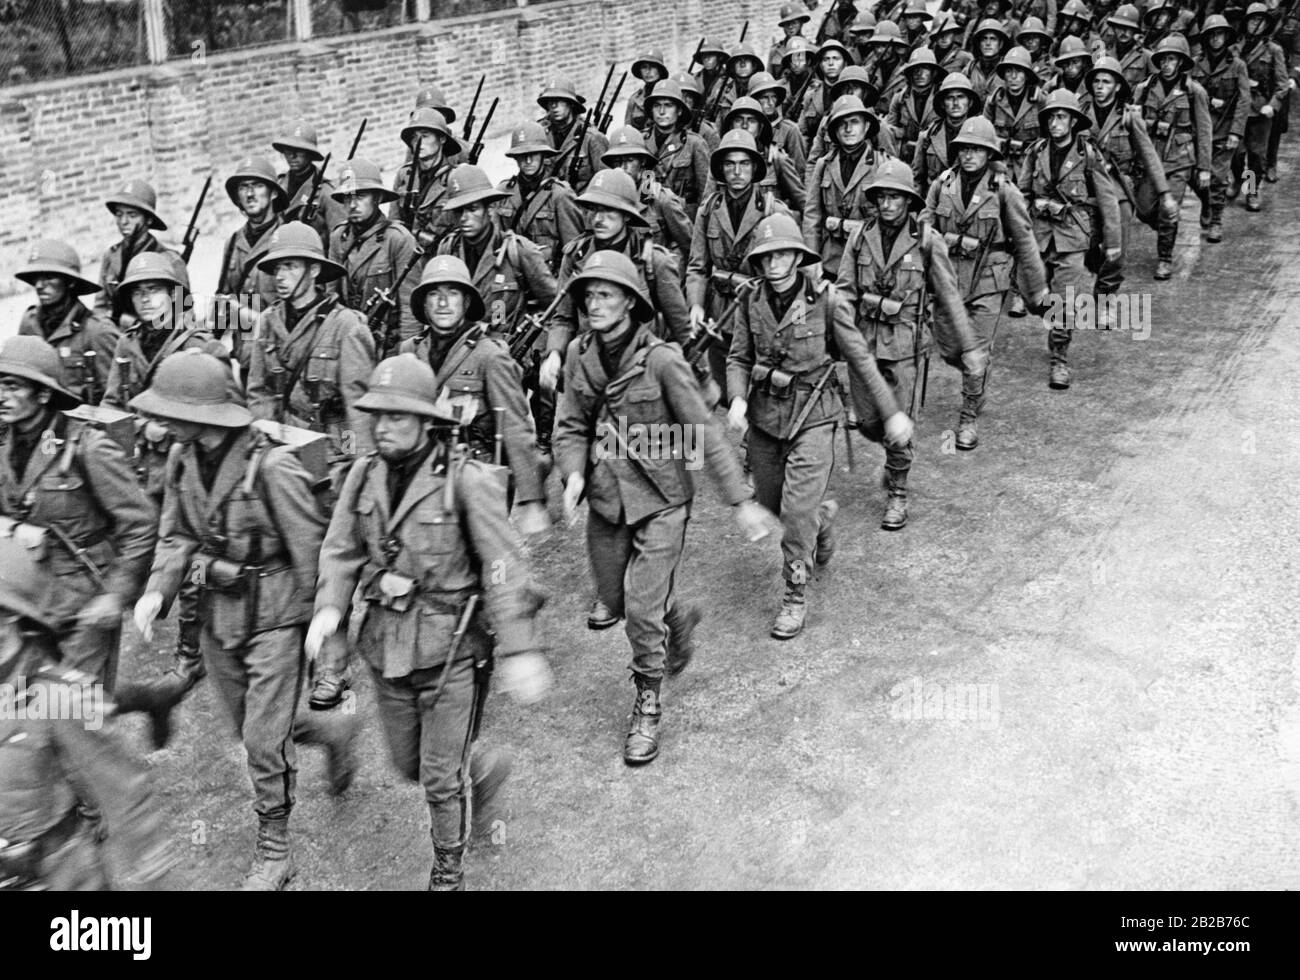 Un bataillon de Greyshirts italiens (Grauhemden) participent à des exercices tactiques pour la guerre à Abyssinia. Banque D'Images